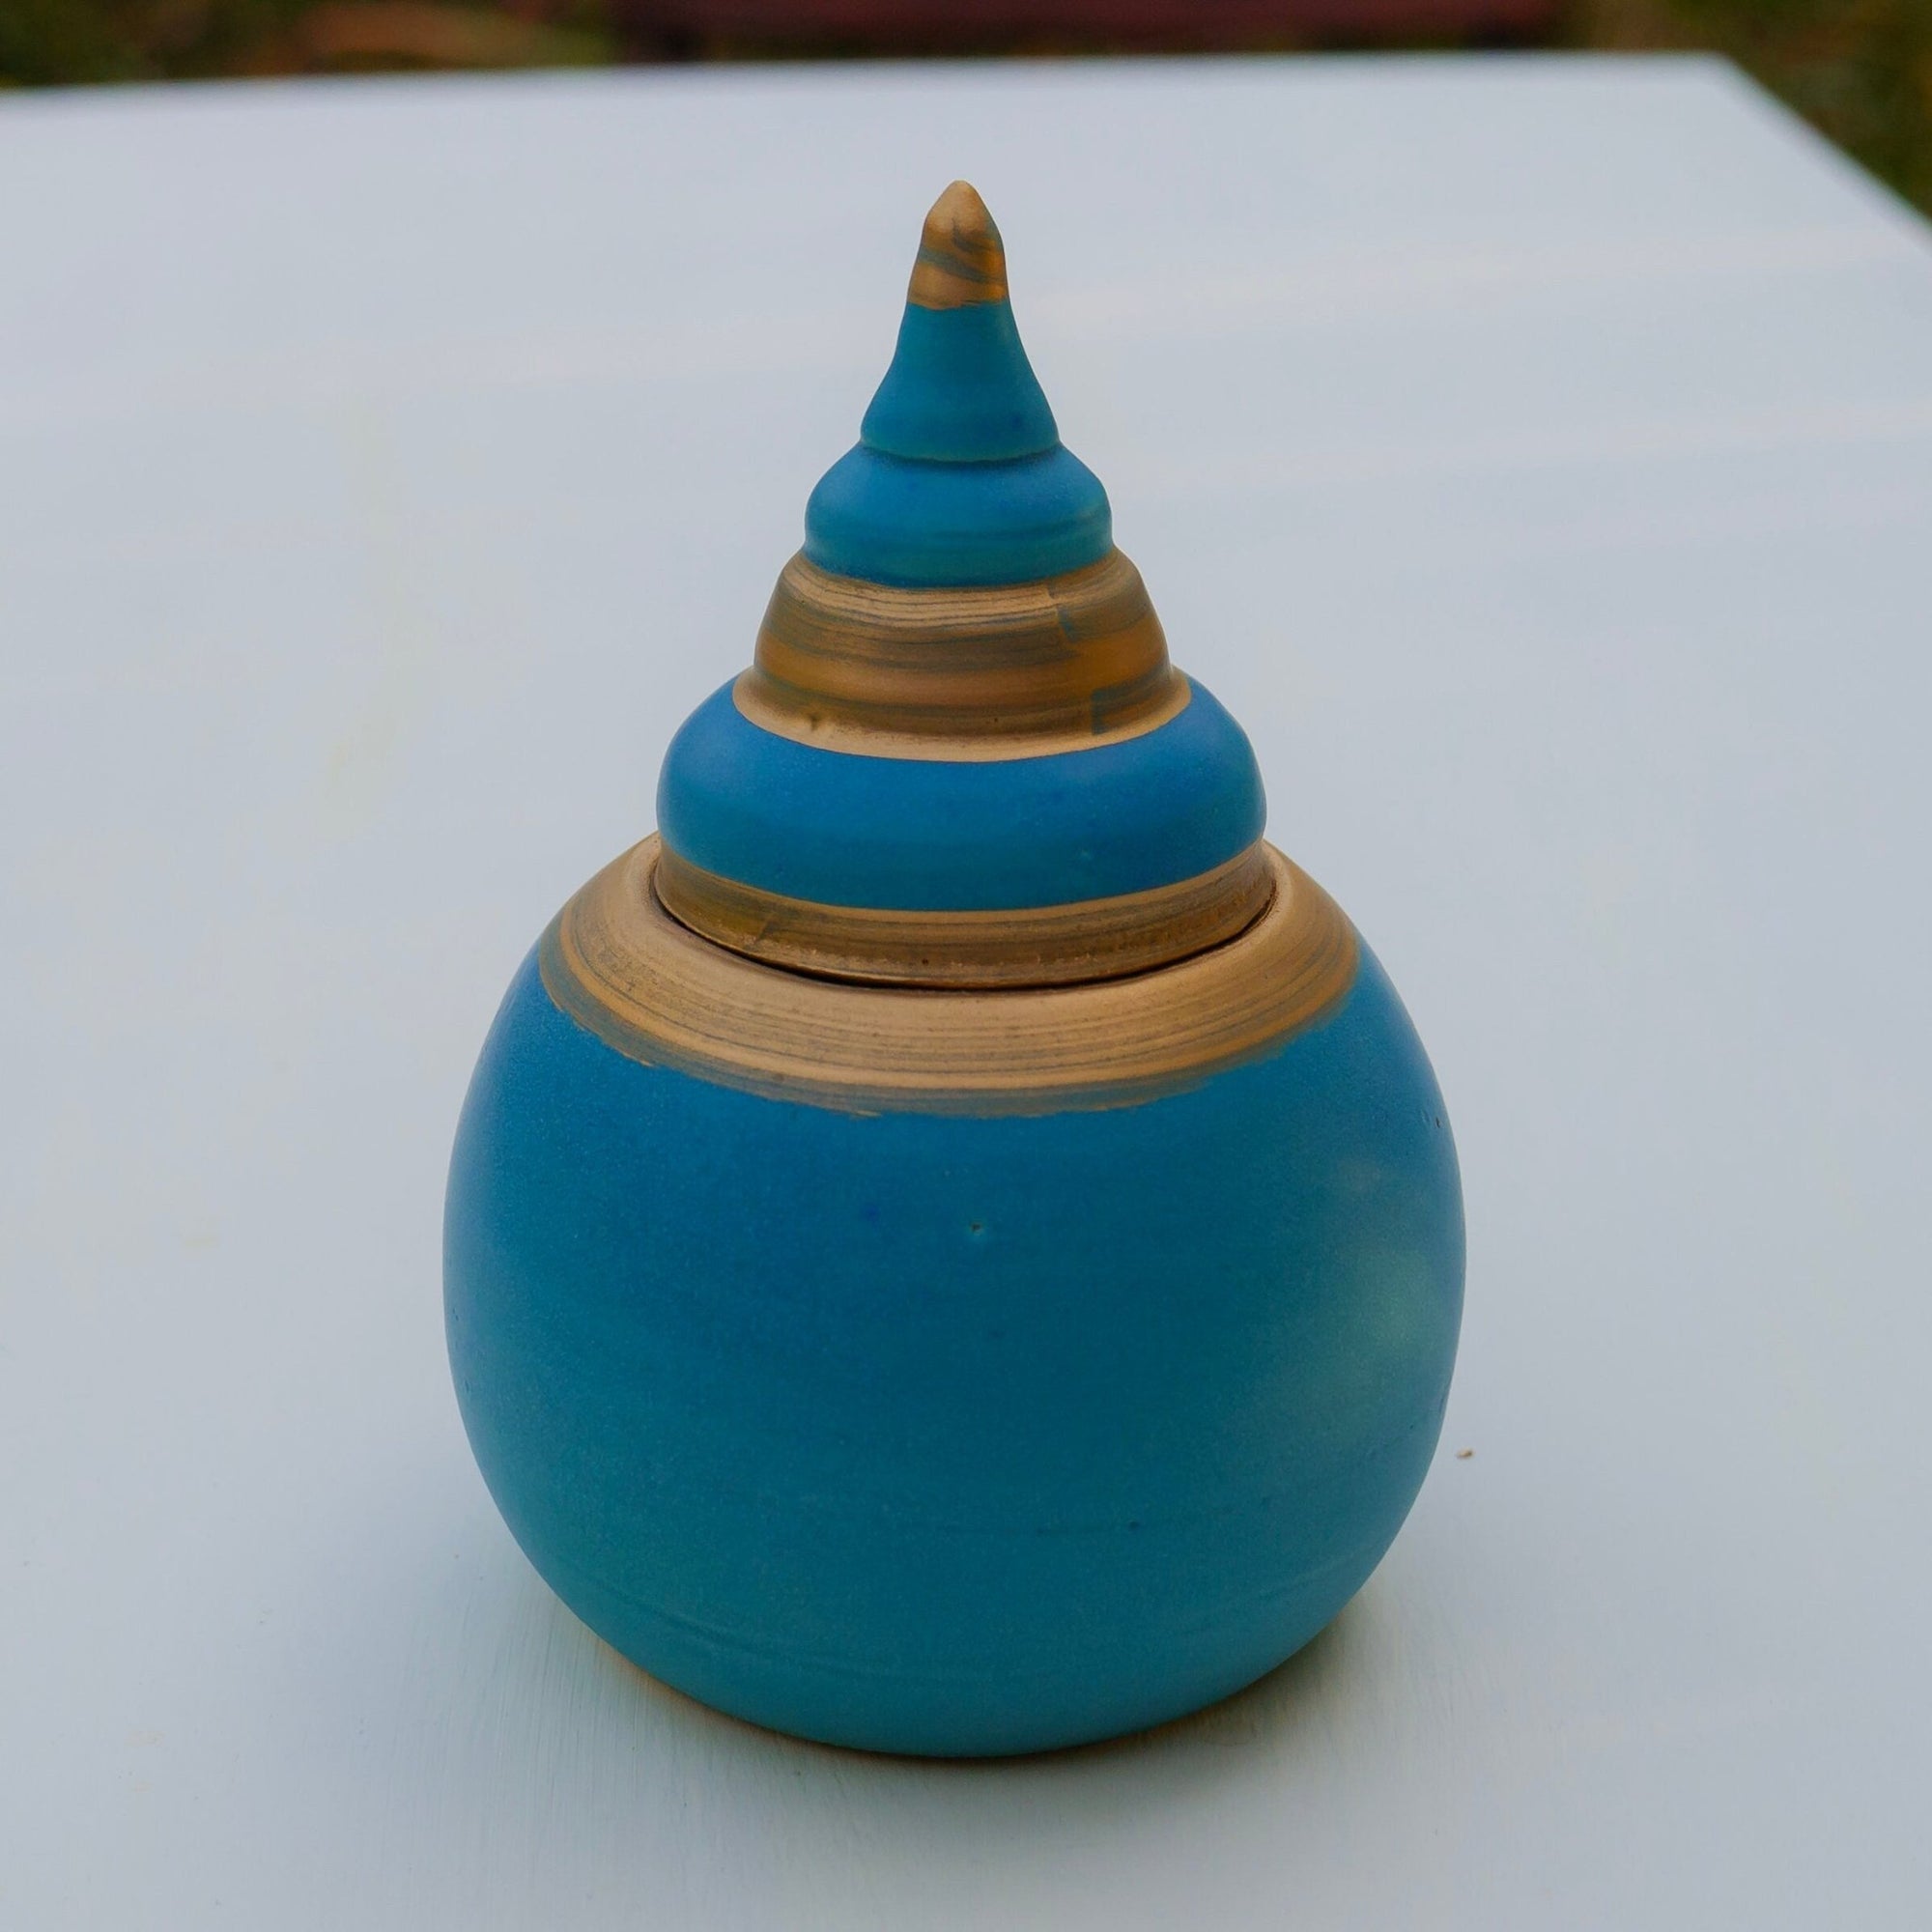 Dose aus Keramik, orientalische Form